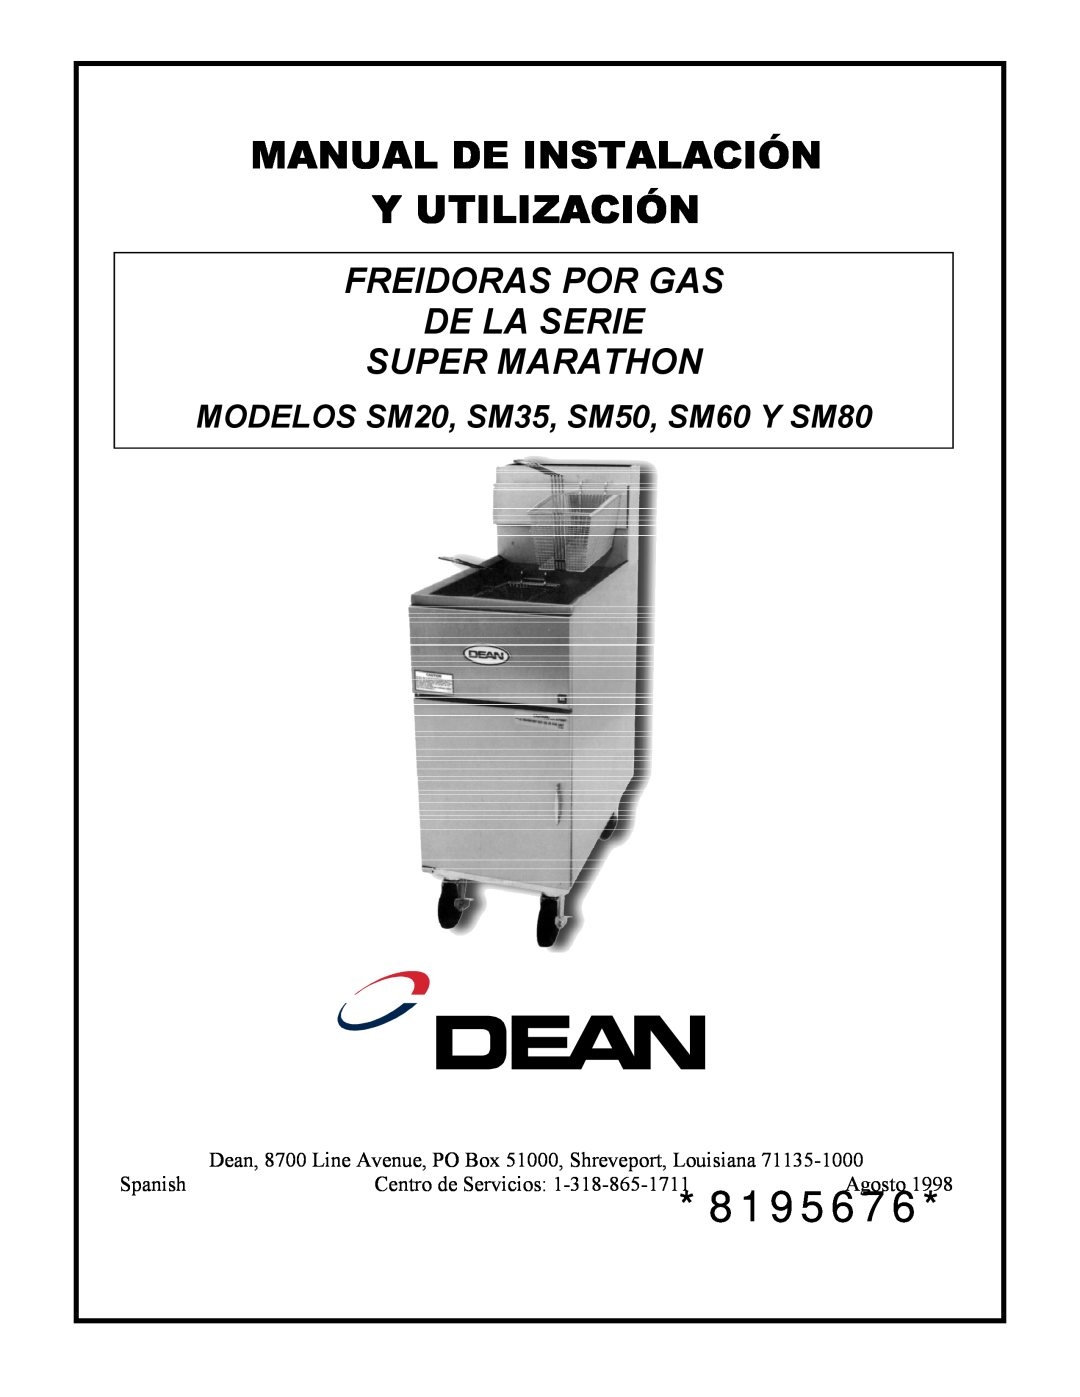 Frymaster Y SM80 manual 8195676, Manual De Instalación Y Utilización, Freidoras Por Gas De La Serie Super Marathon 